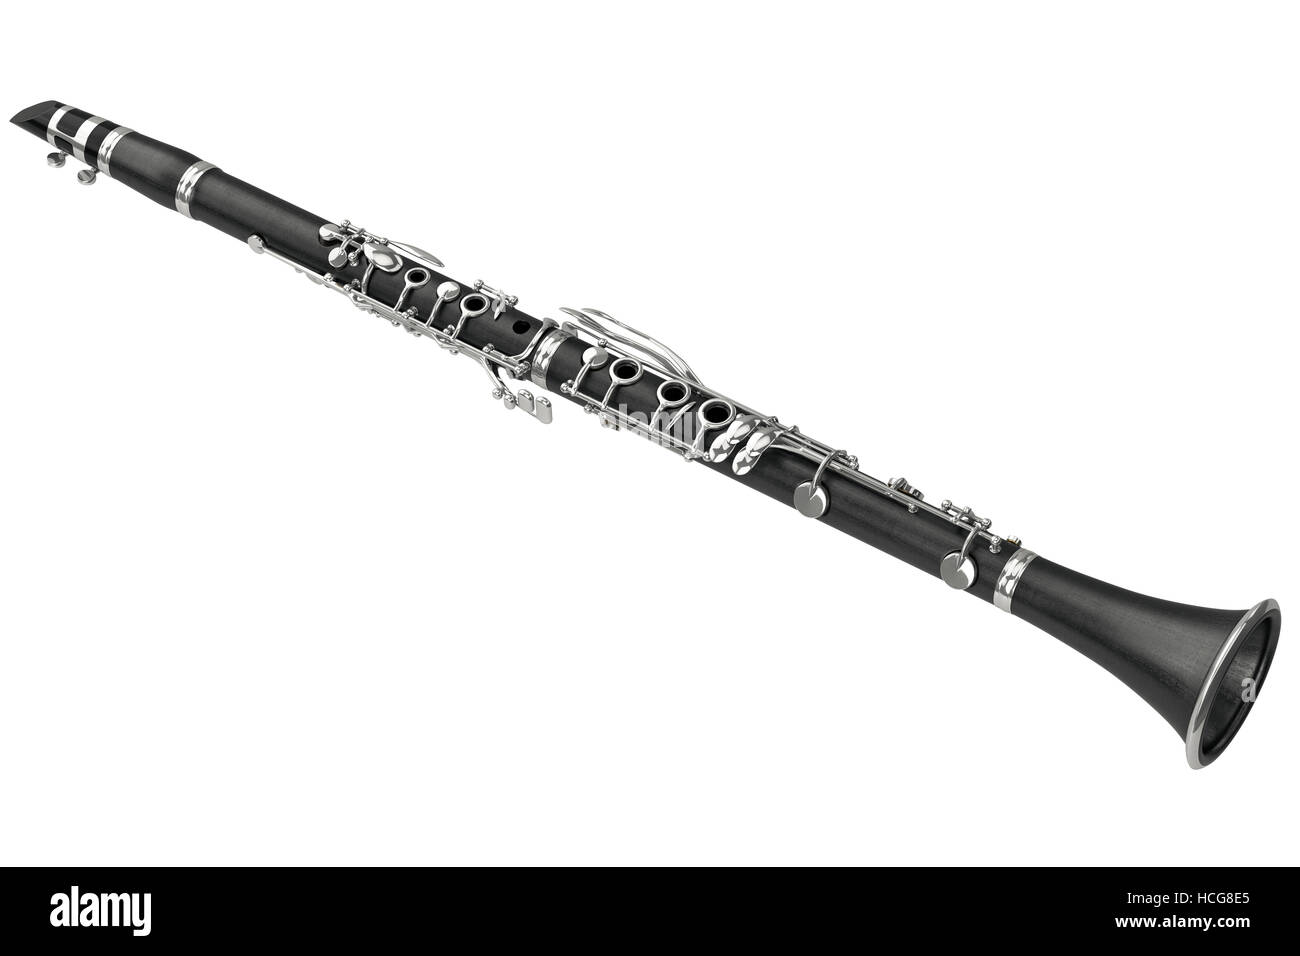 Clarinete instrumento musical de viento Fotografía de stock - Alamy